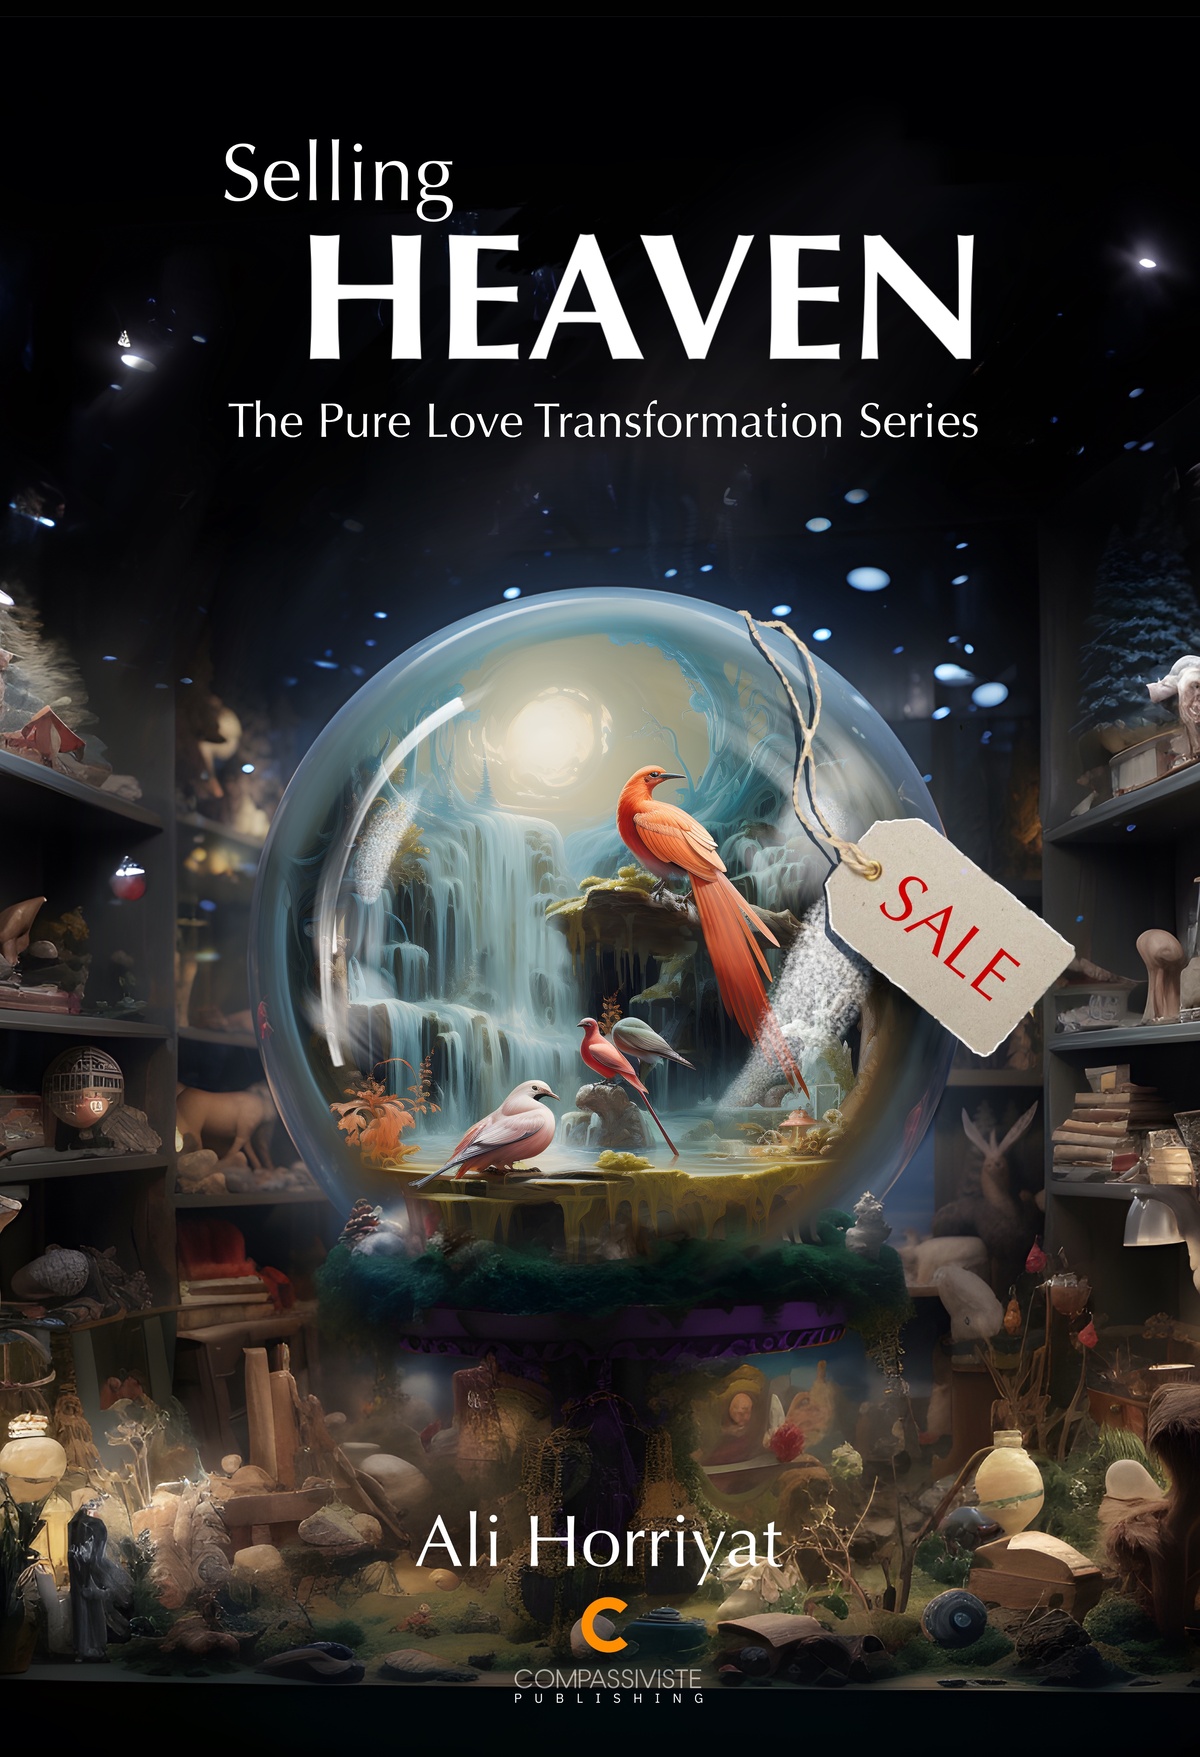 Book cover of Selling Heaven by Ali Horriyat